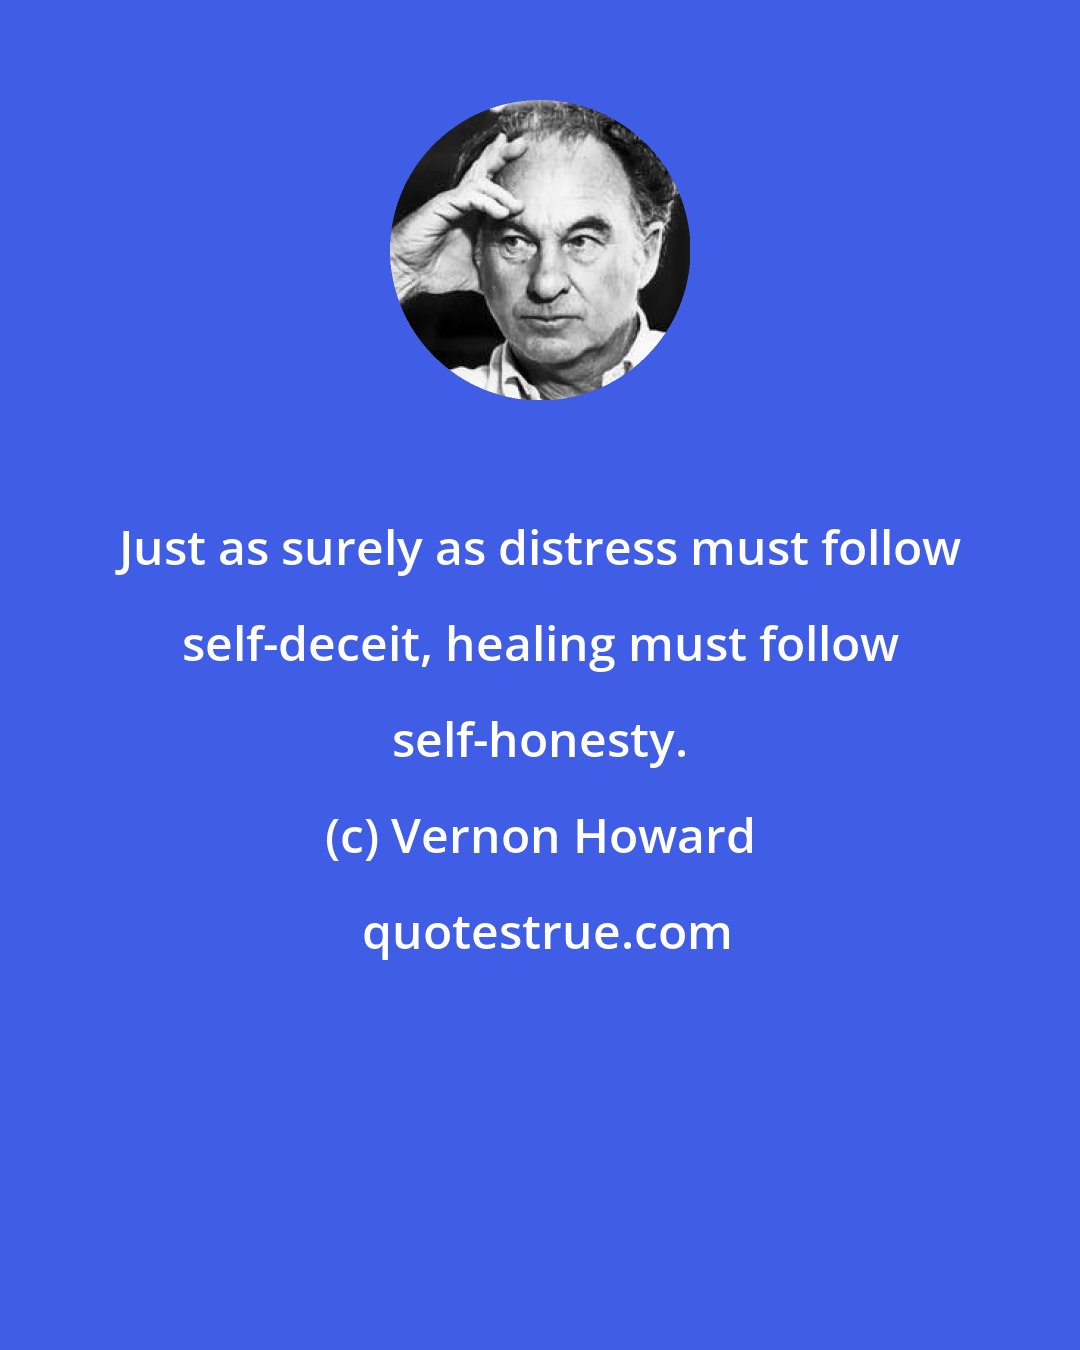 Vernon Howard: Just as surely as distress must follow self-deceit, healing must follow self-honesty.